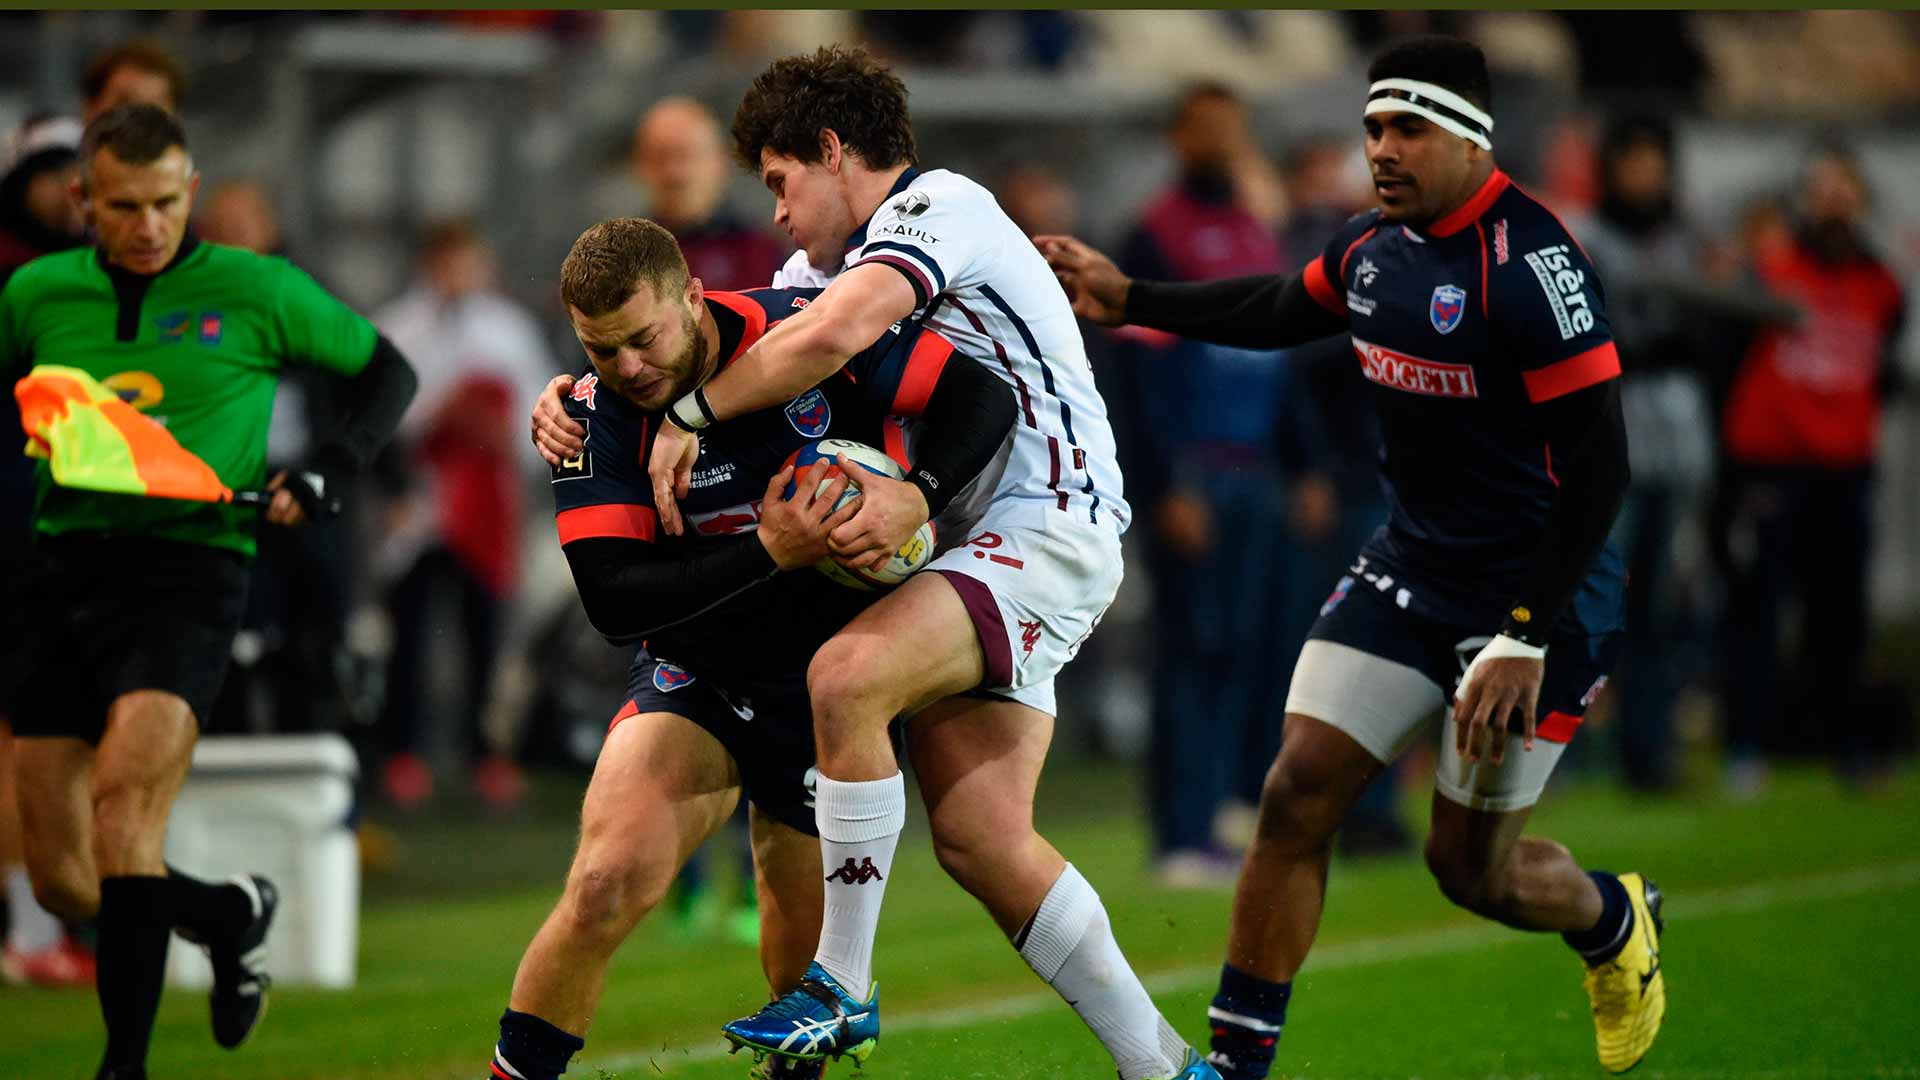 Acusados de violación tres jugadores de rugby del Grenoble